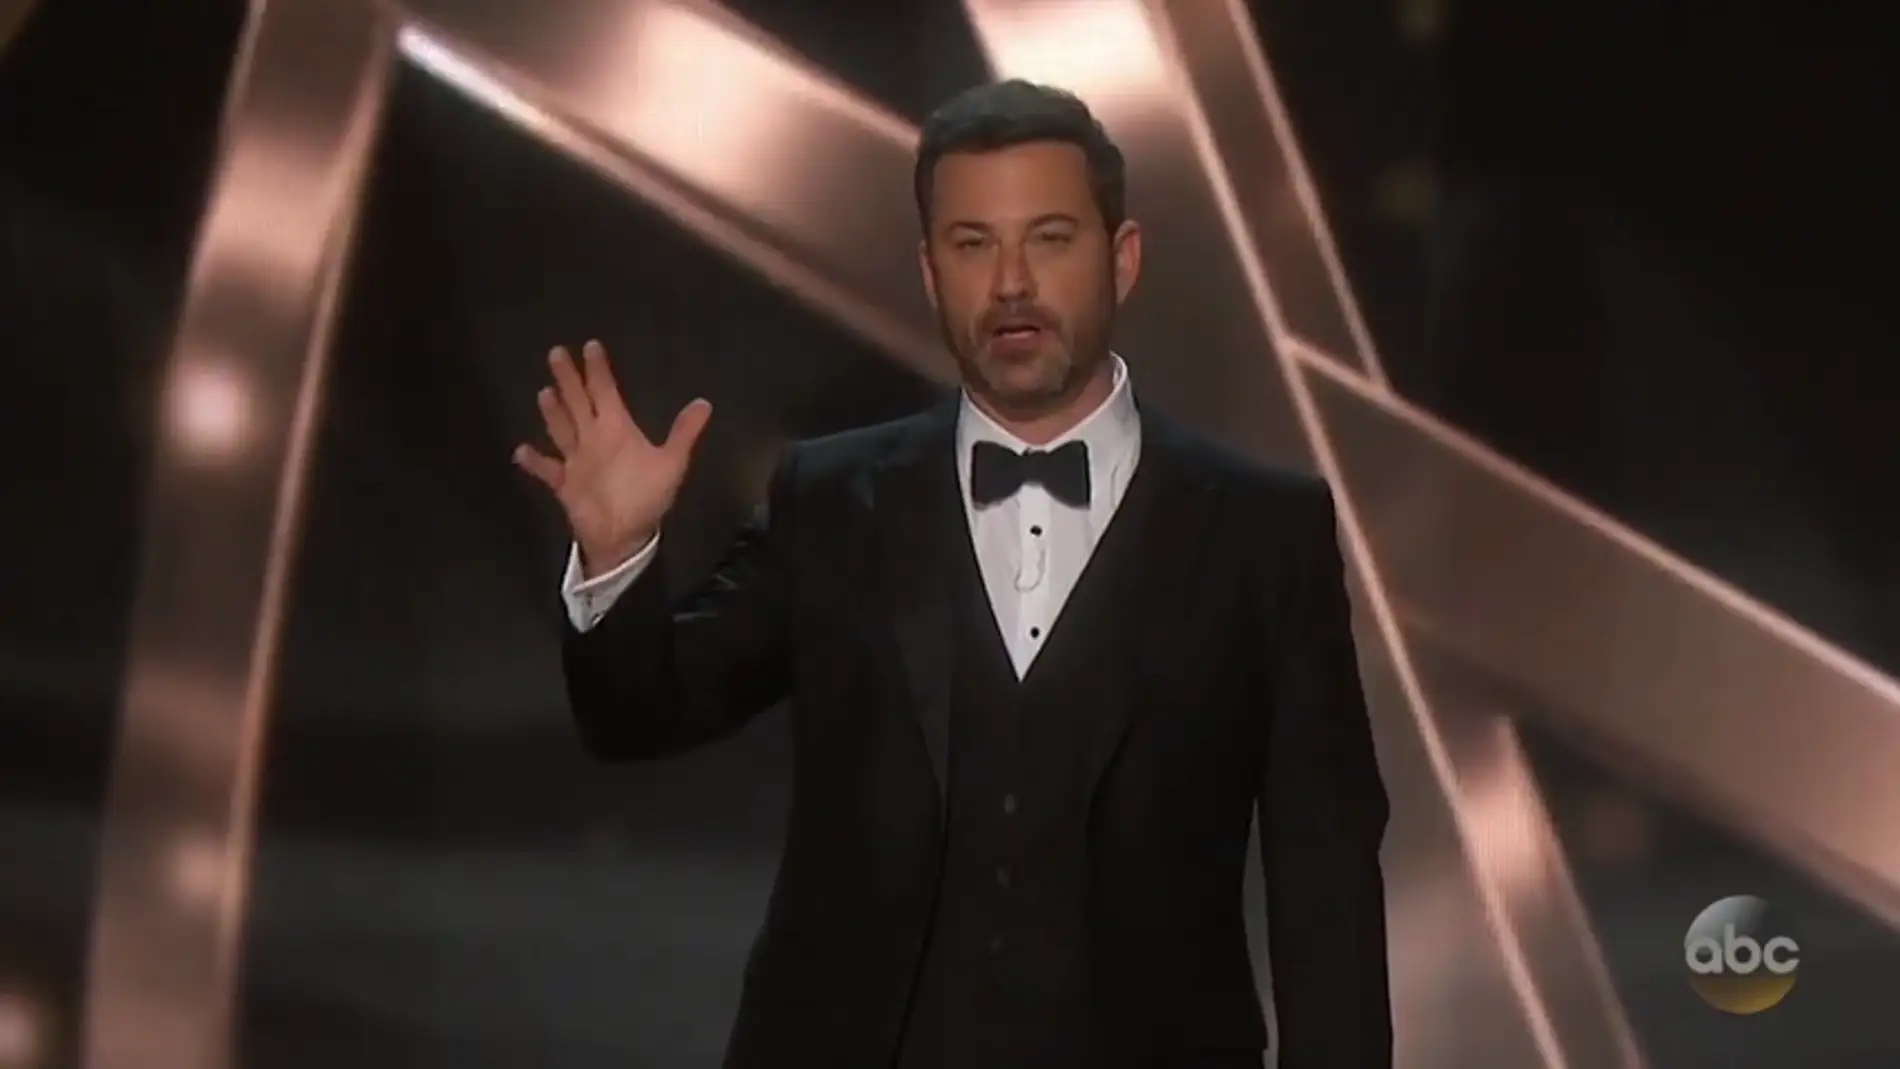 Frame 48.337991 de: Jimmy Kimmel arremete contra Donald Trump en su monólogo de los premios Emmy